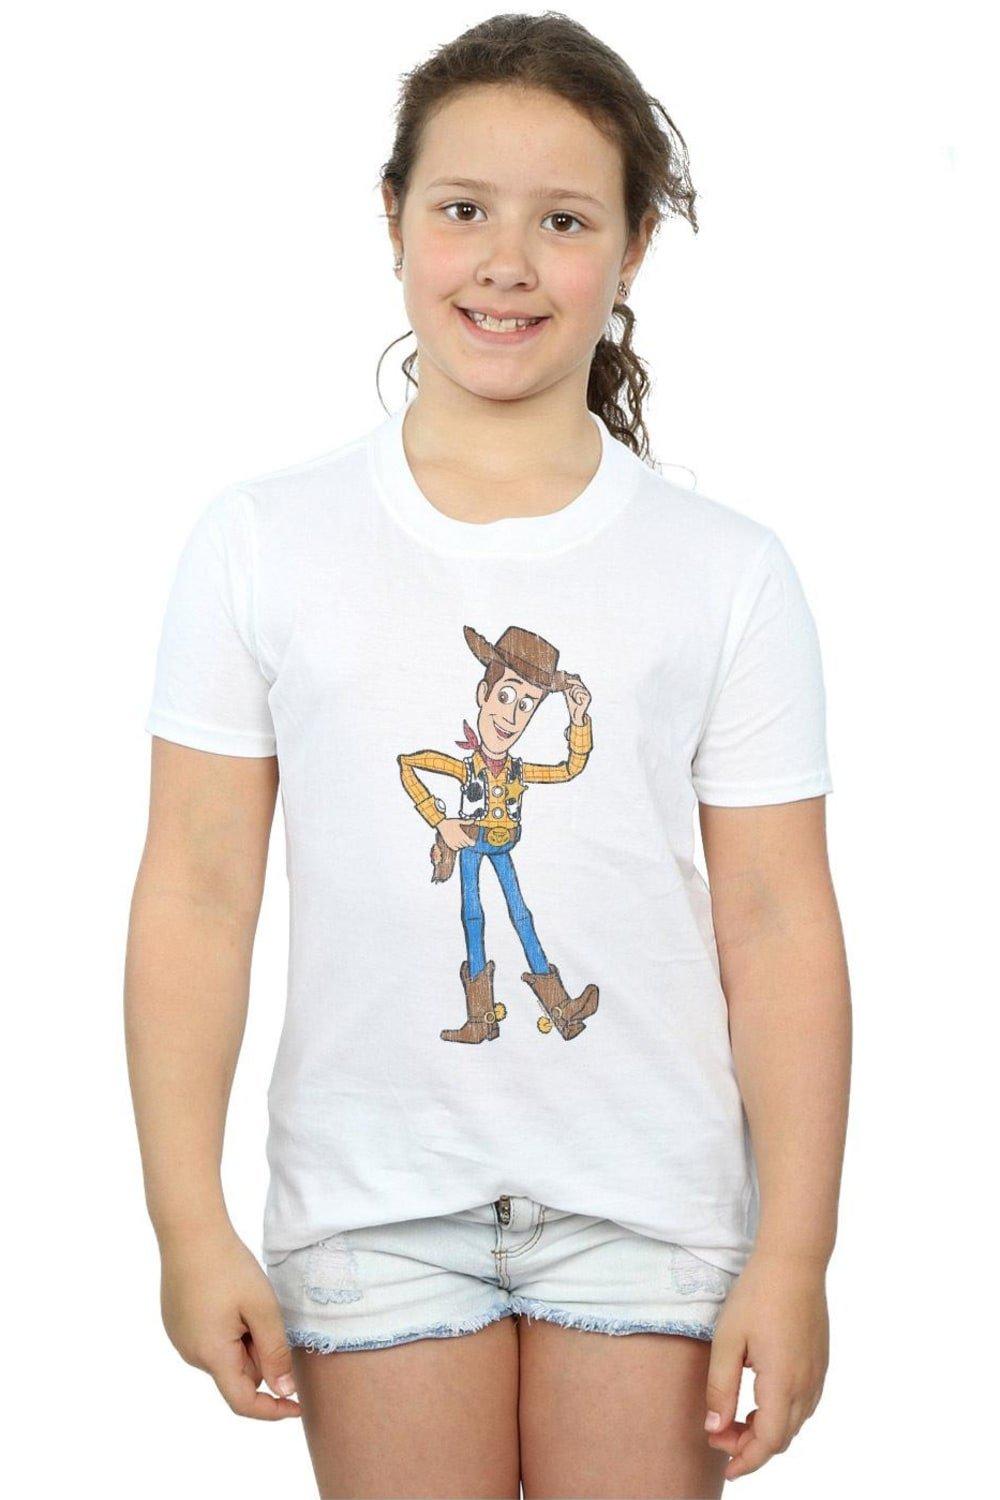 Хлопковая футболка «История игрушек 4: Шериф Вуди» Disney, белый пазлы история игрушек шериф вуди и его друзья детская логика